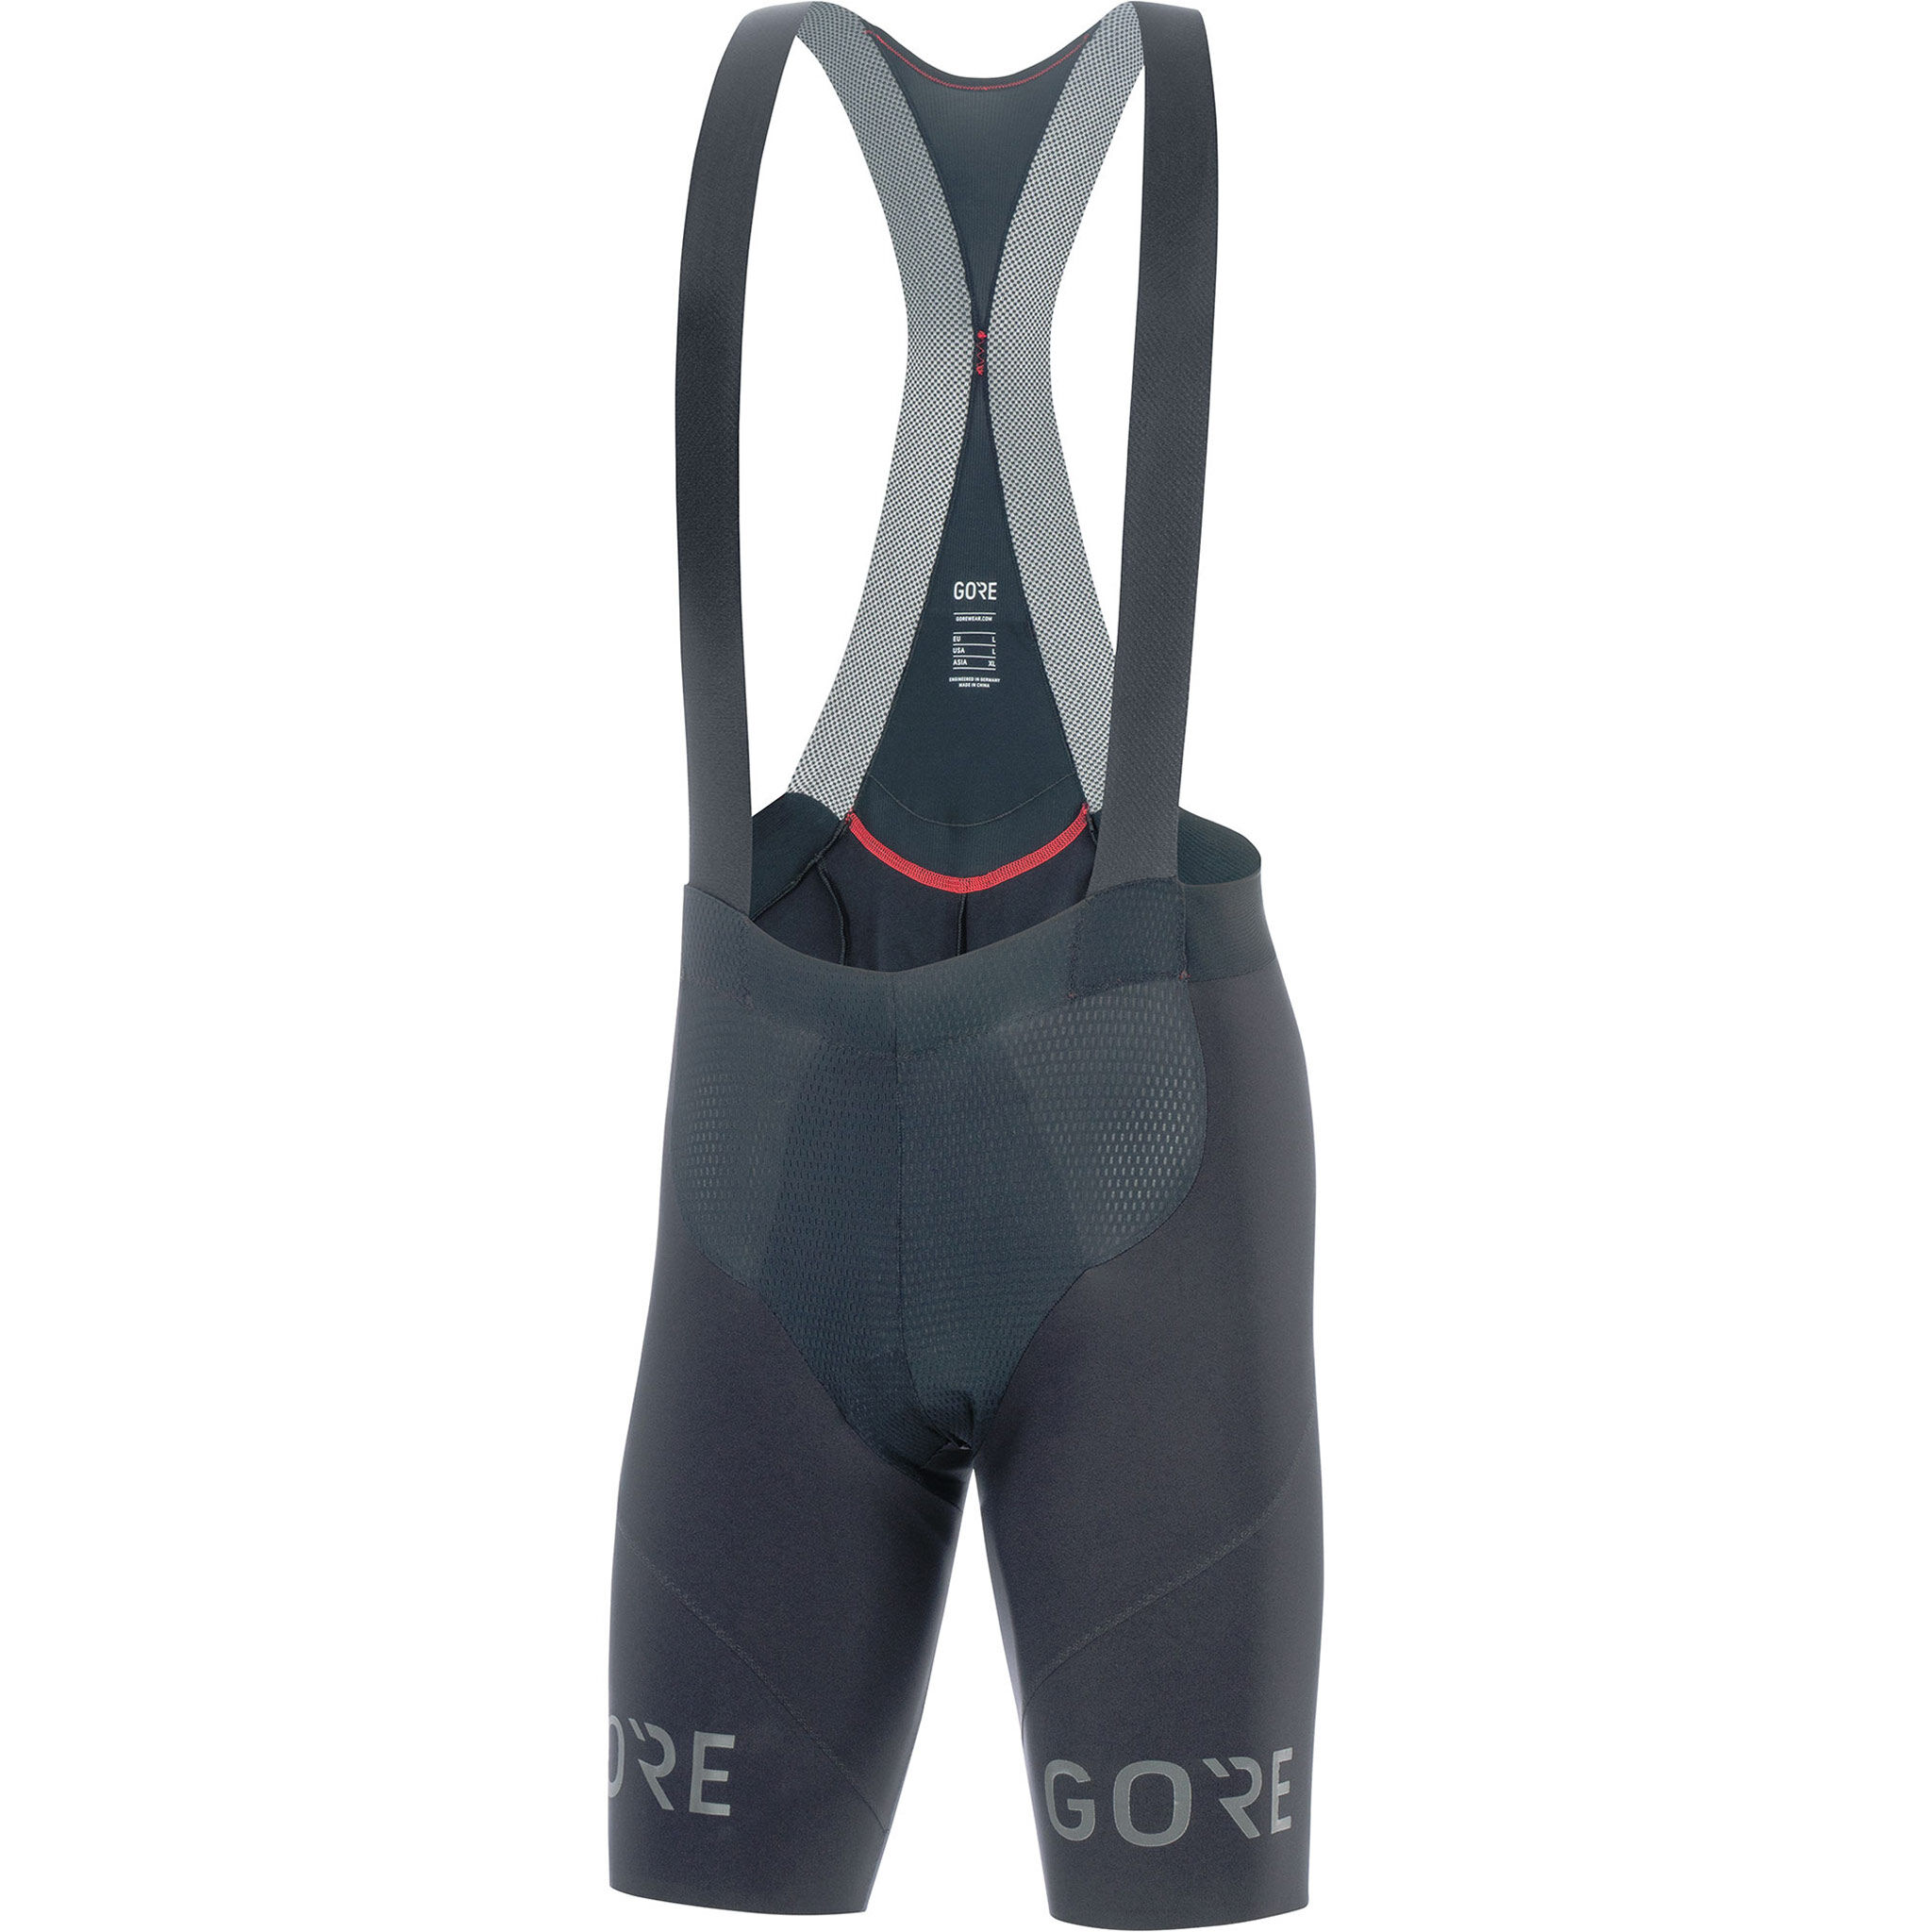 Gore Wear C7 Long Distance Bib Shorts+ - Cycling shorts - Men's